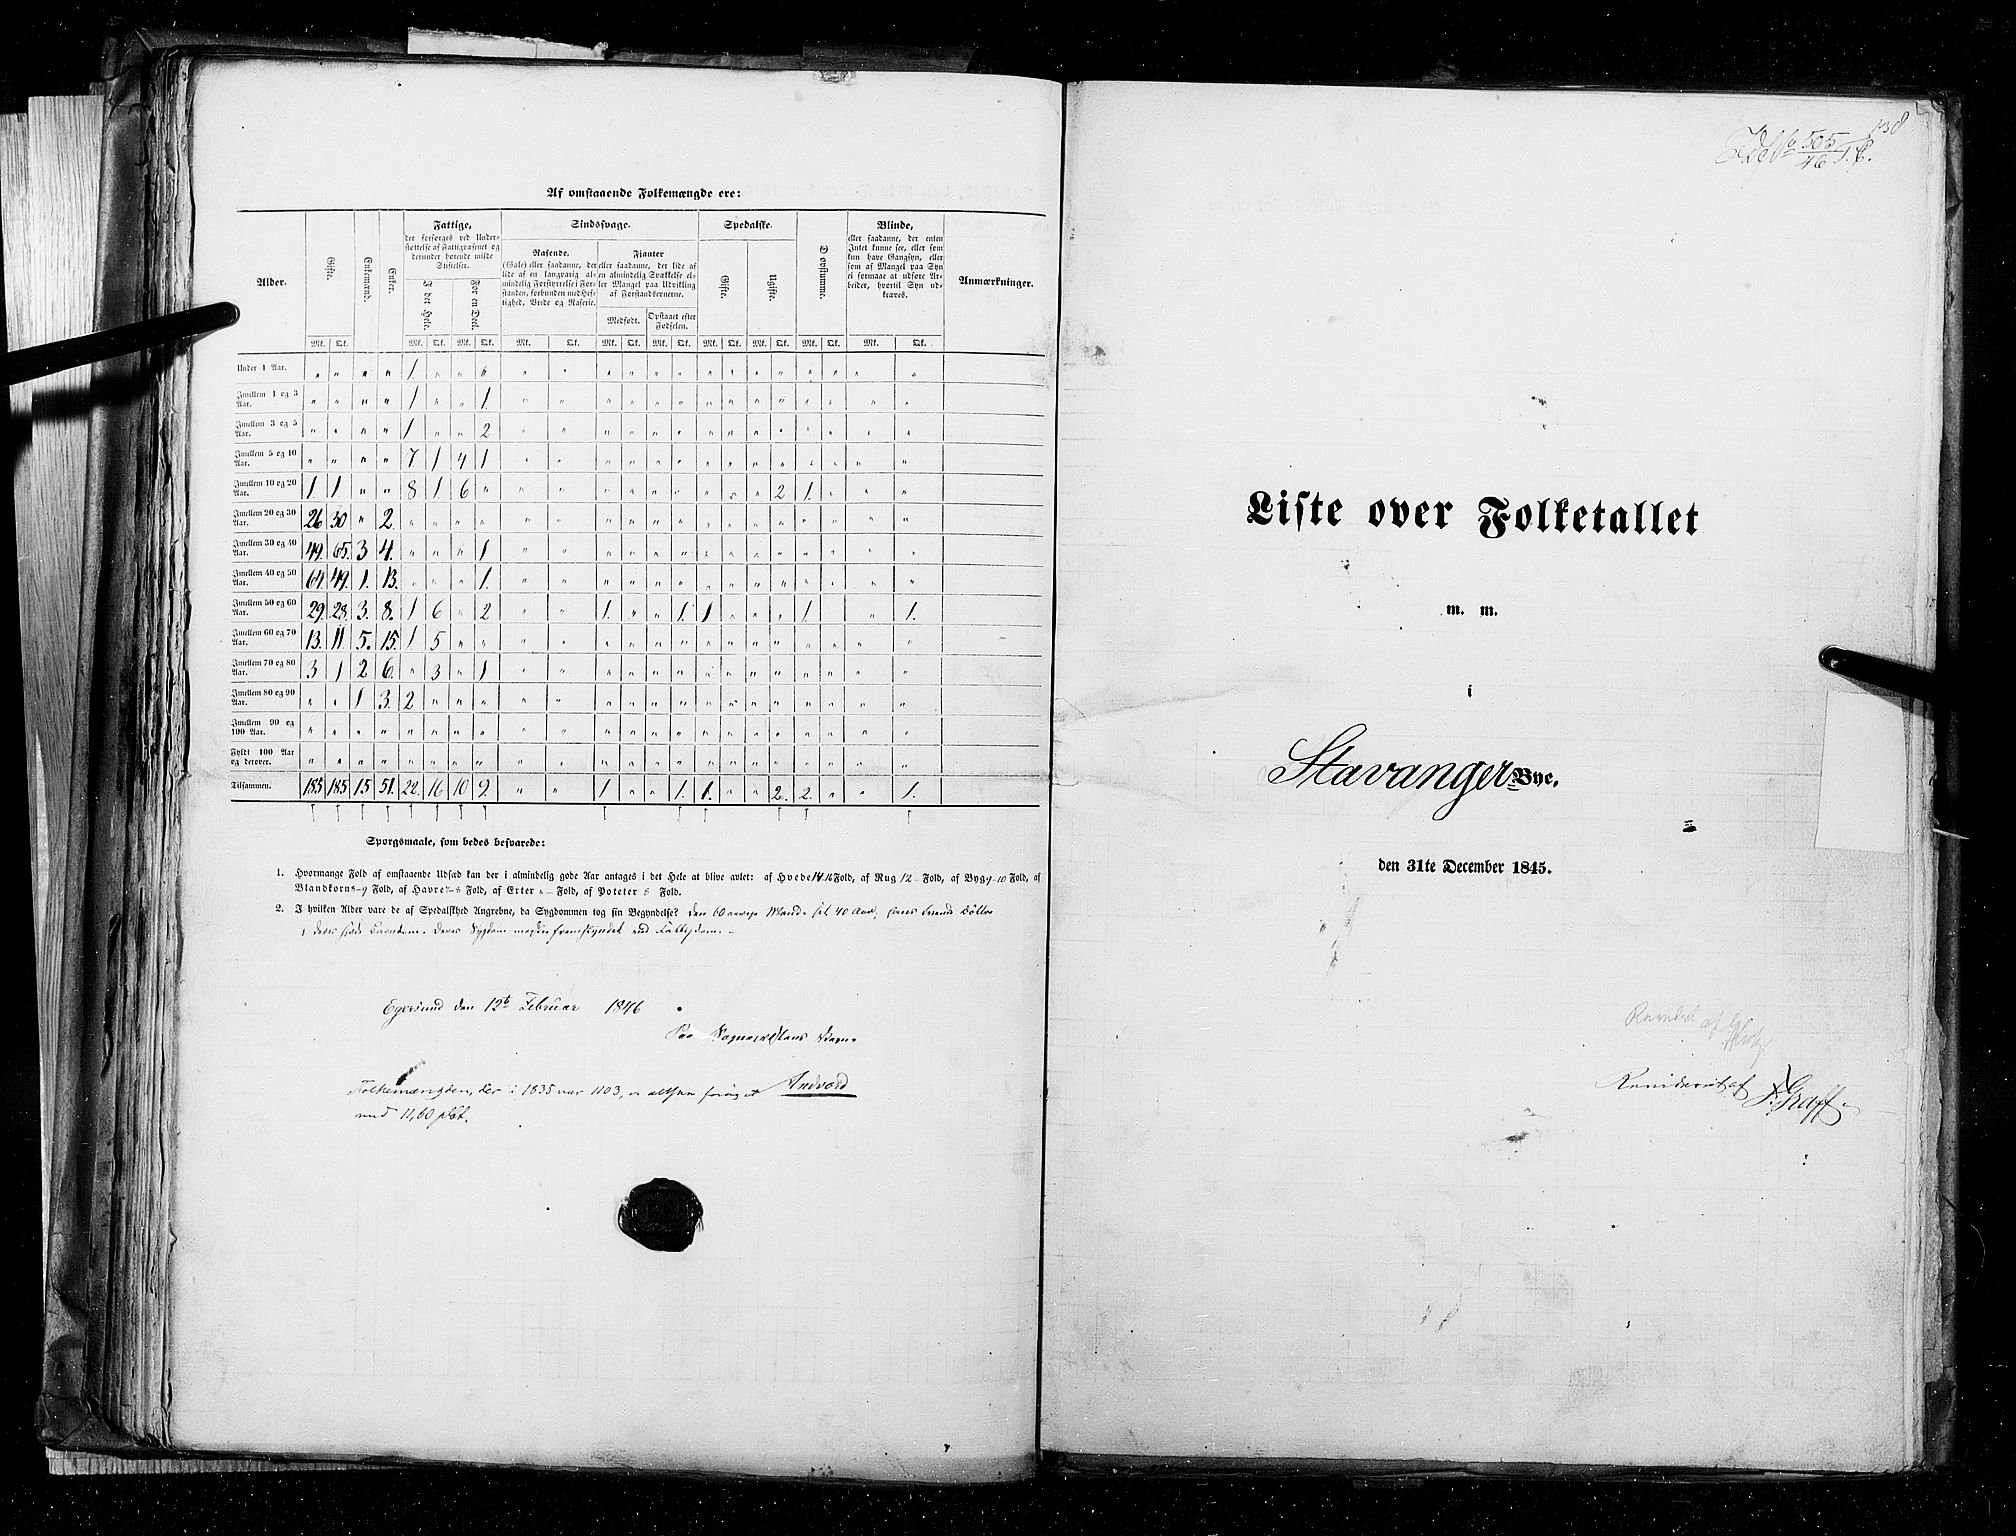 RA, Folketellingen 1845, bind 11: Kjøp- og ladesteder, 1845, s. 138